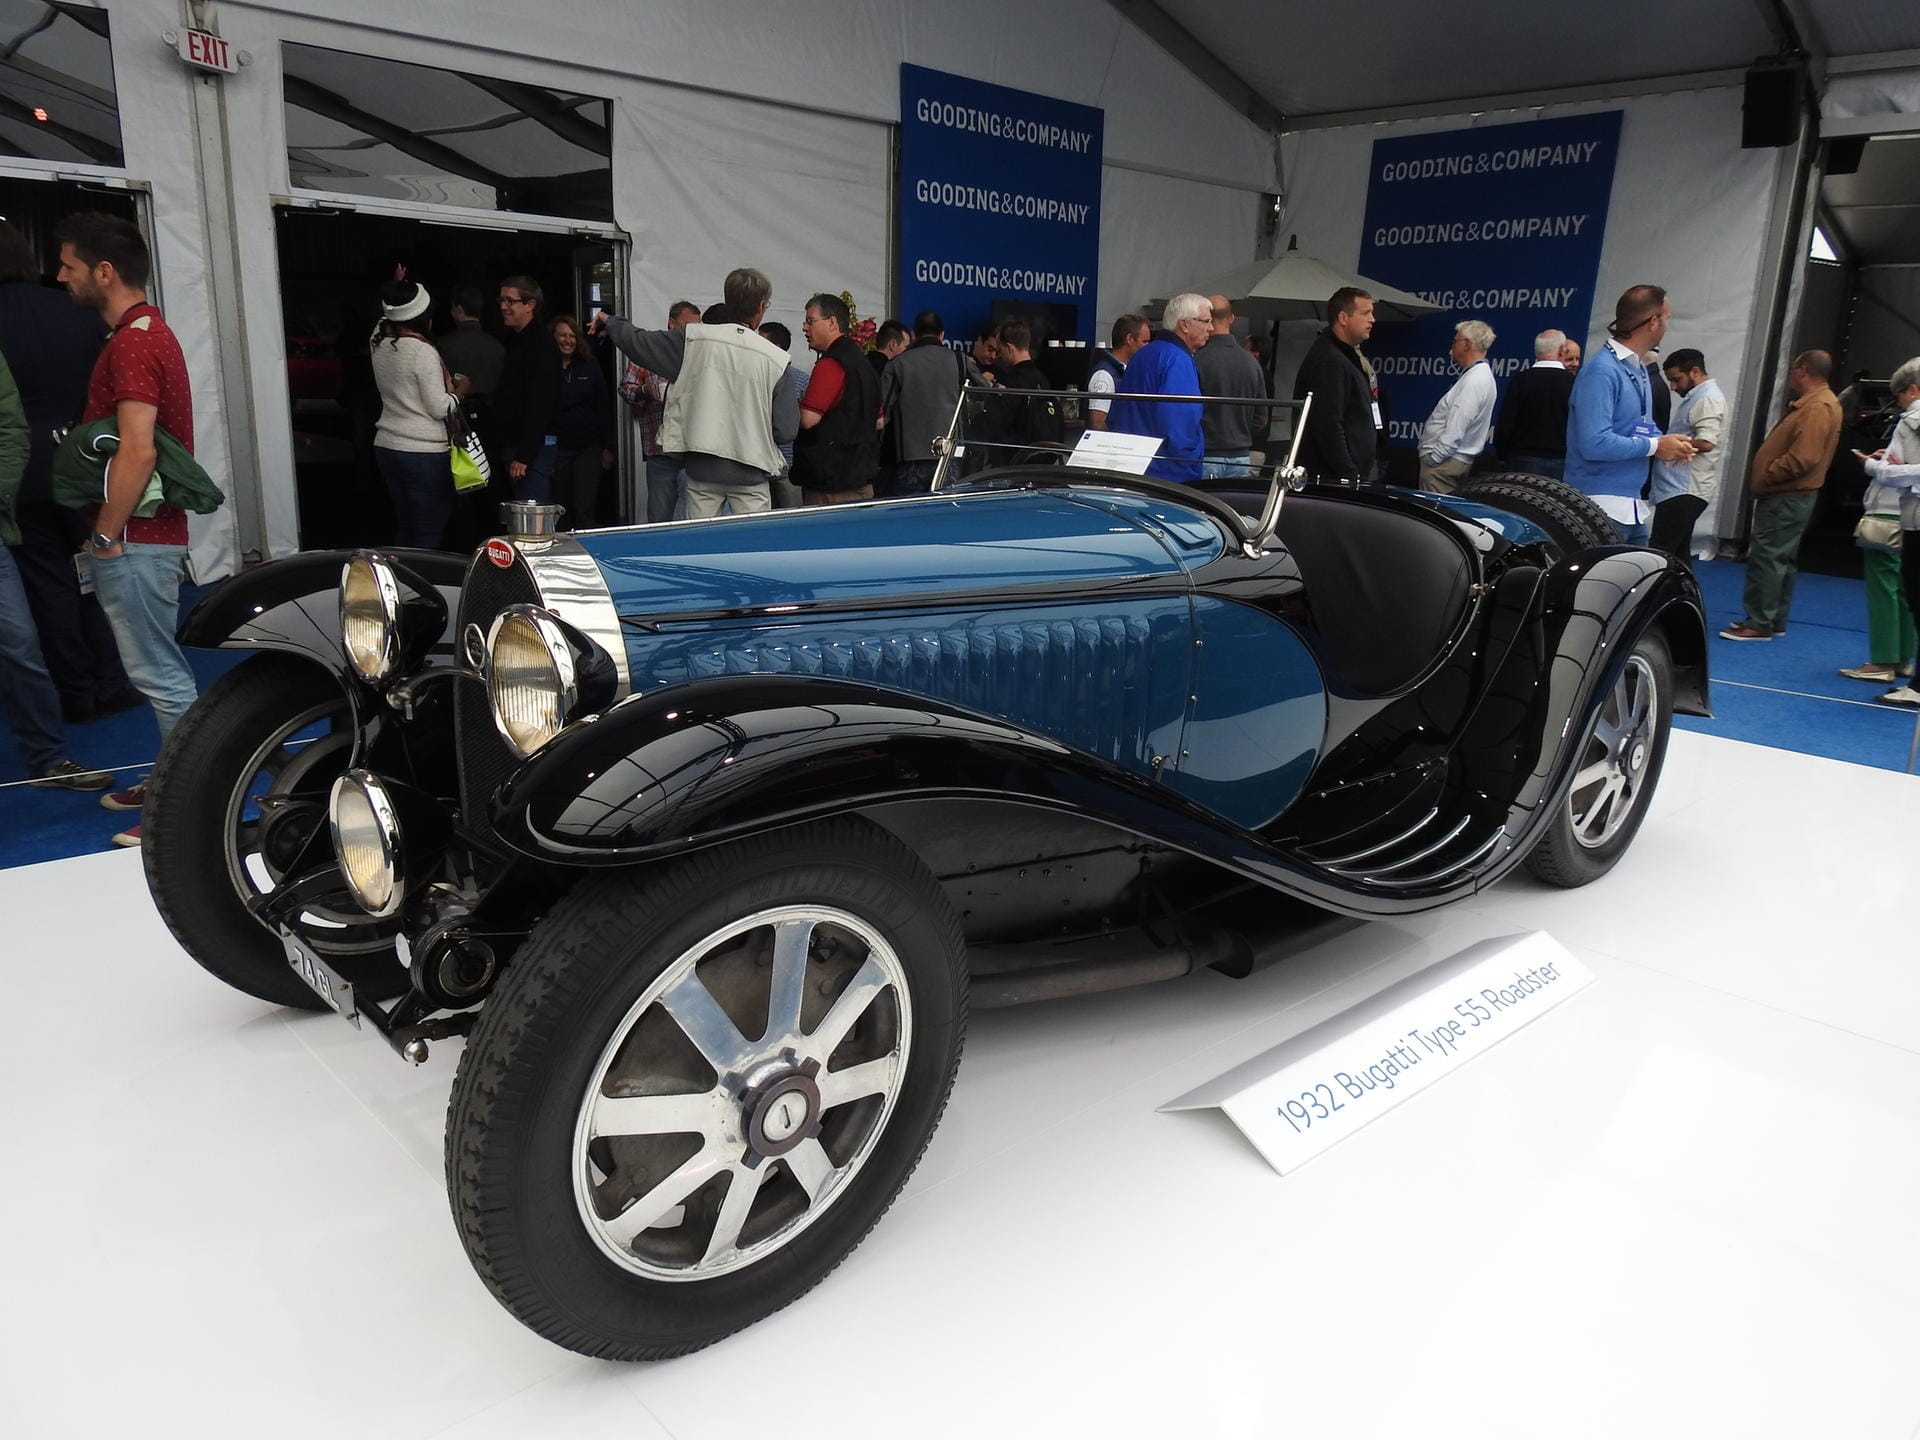 Auffallend ist in diesem Jahr laut Classic-Analytics die relativ hohe Anzahl an Vorkriegsautos im Ranking, wie der Bugatti Typ 55, der für 10,4 Millionen Dollar unter den Hammer kam...